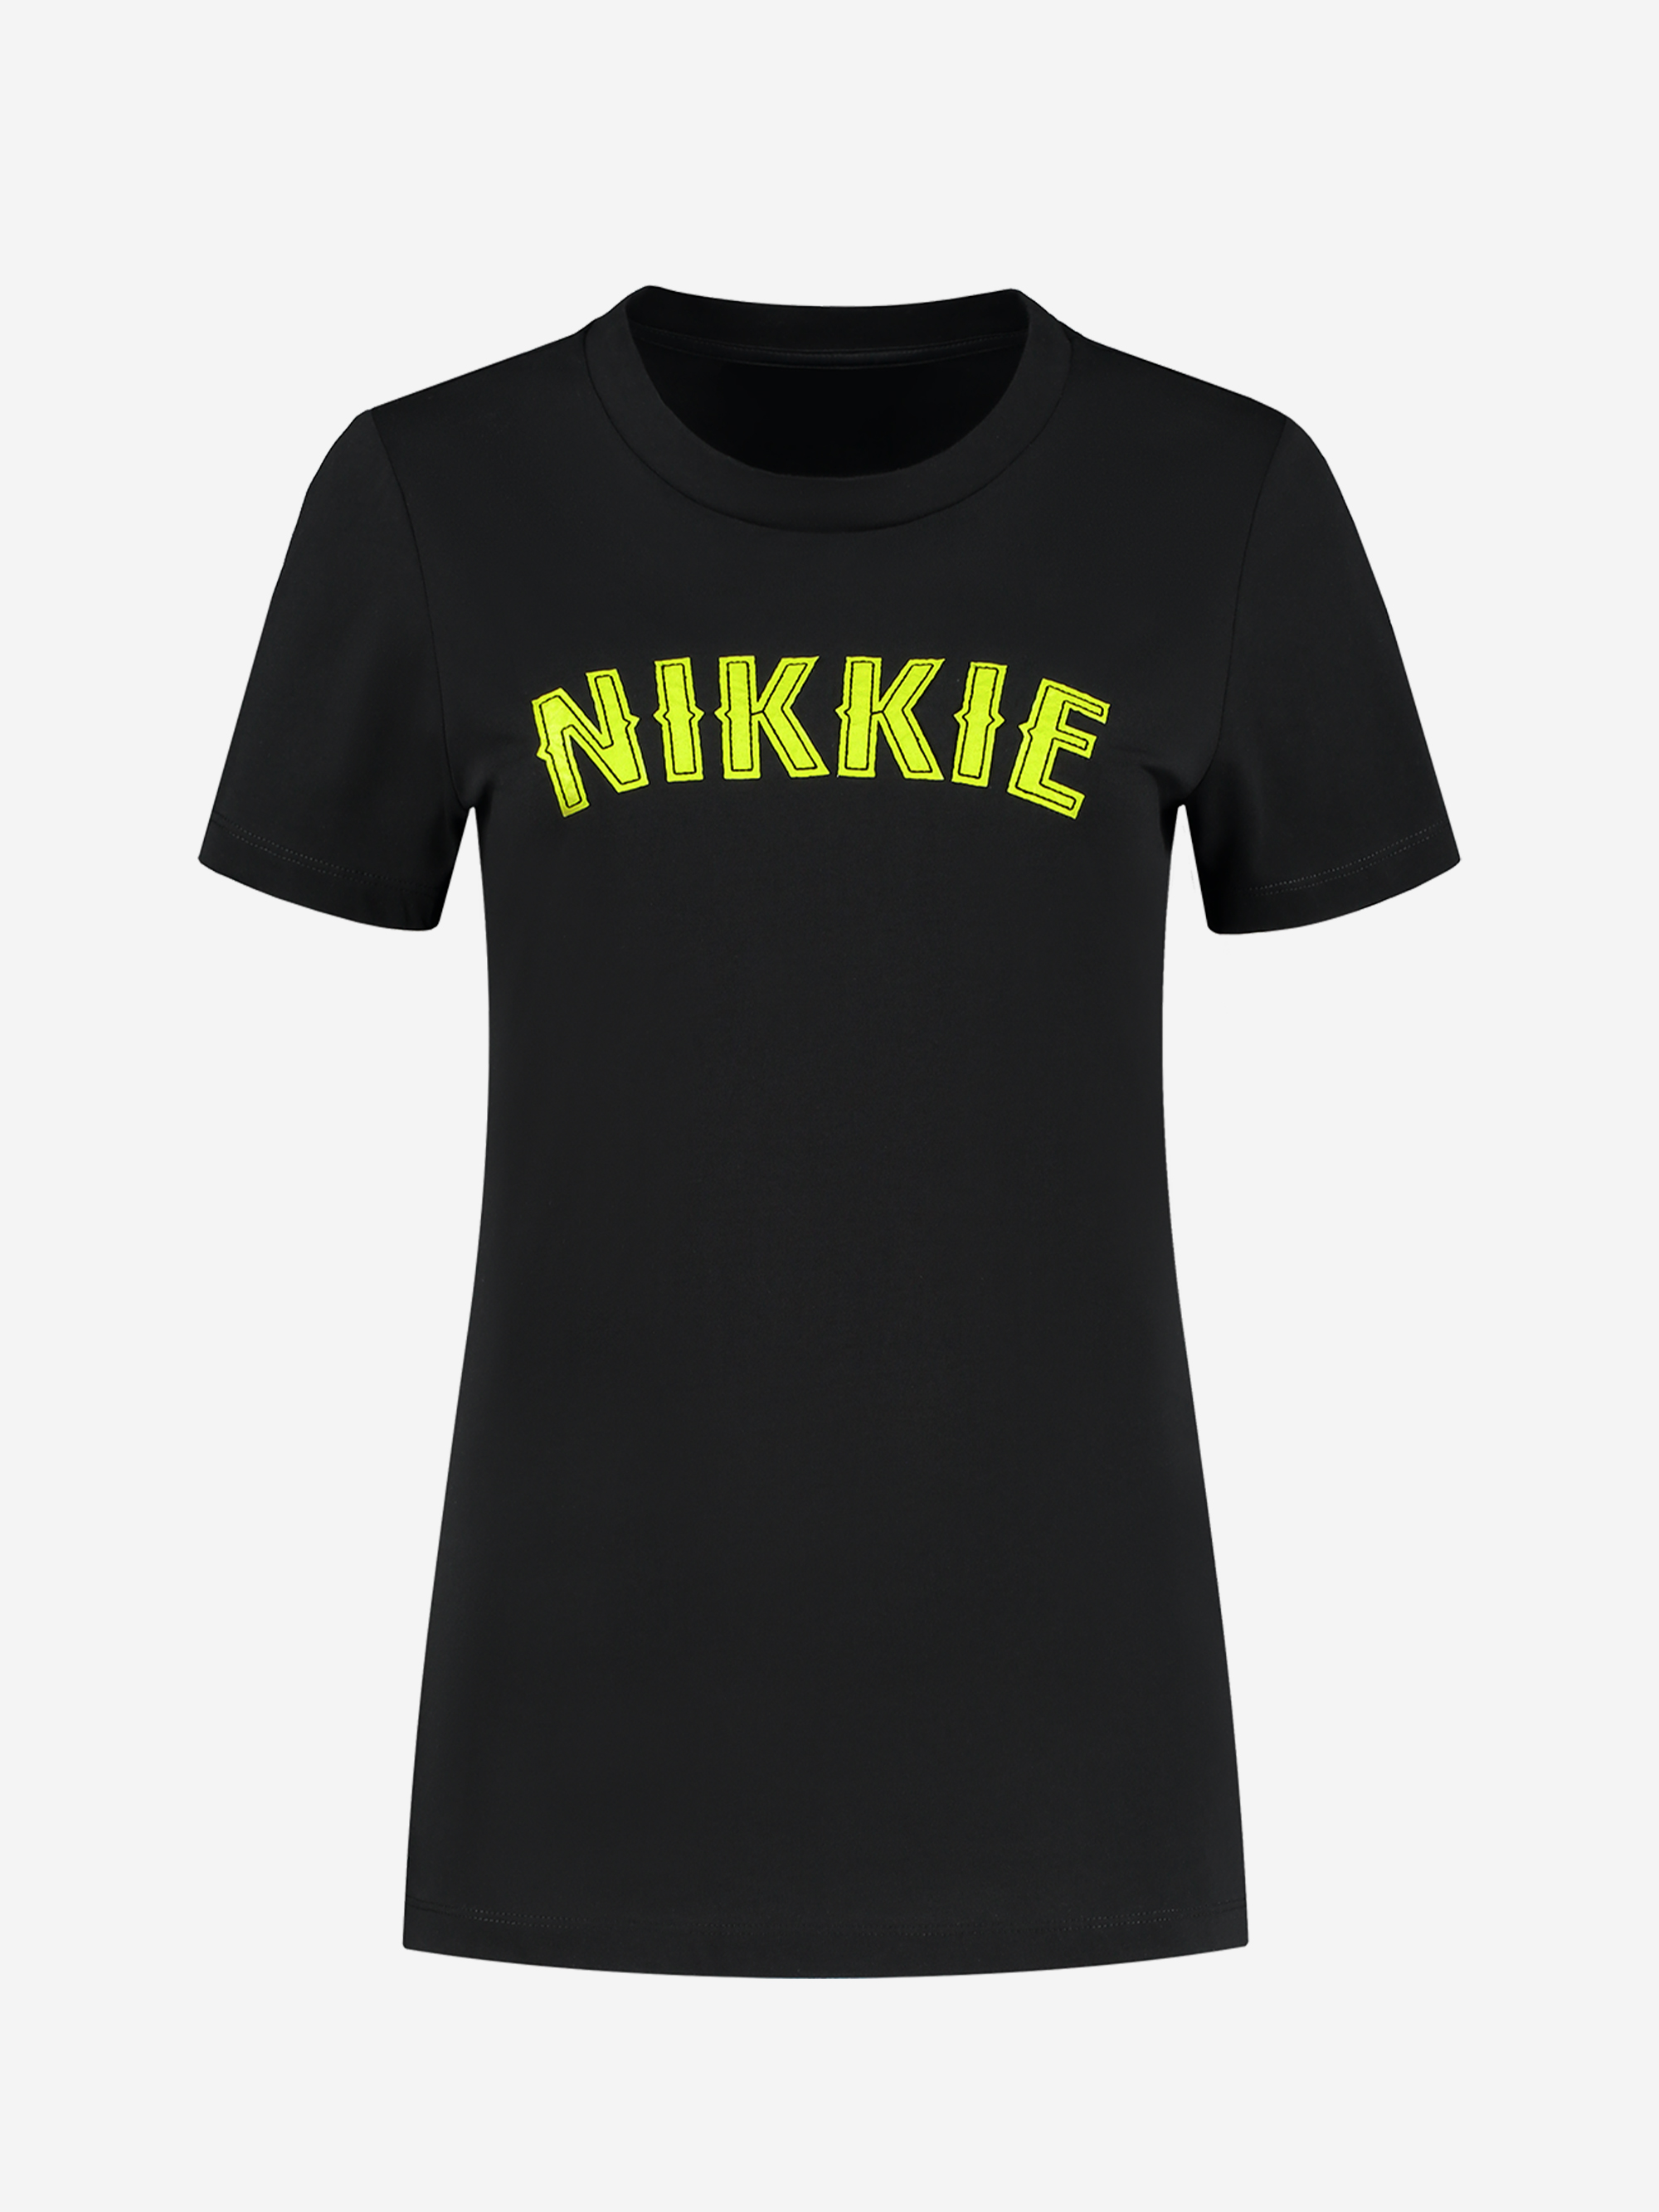 NIKKIE Poison T-Shirt